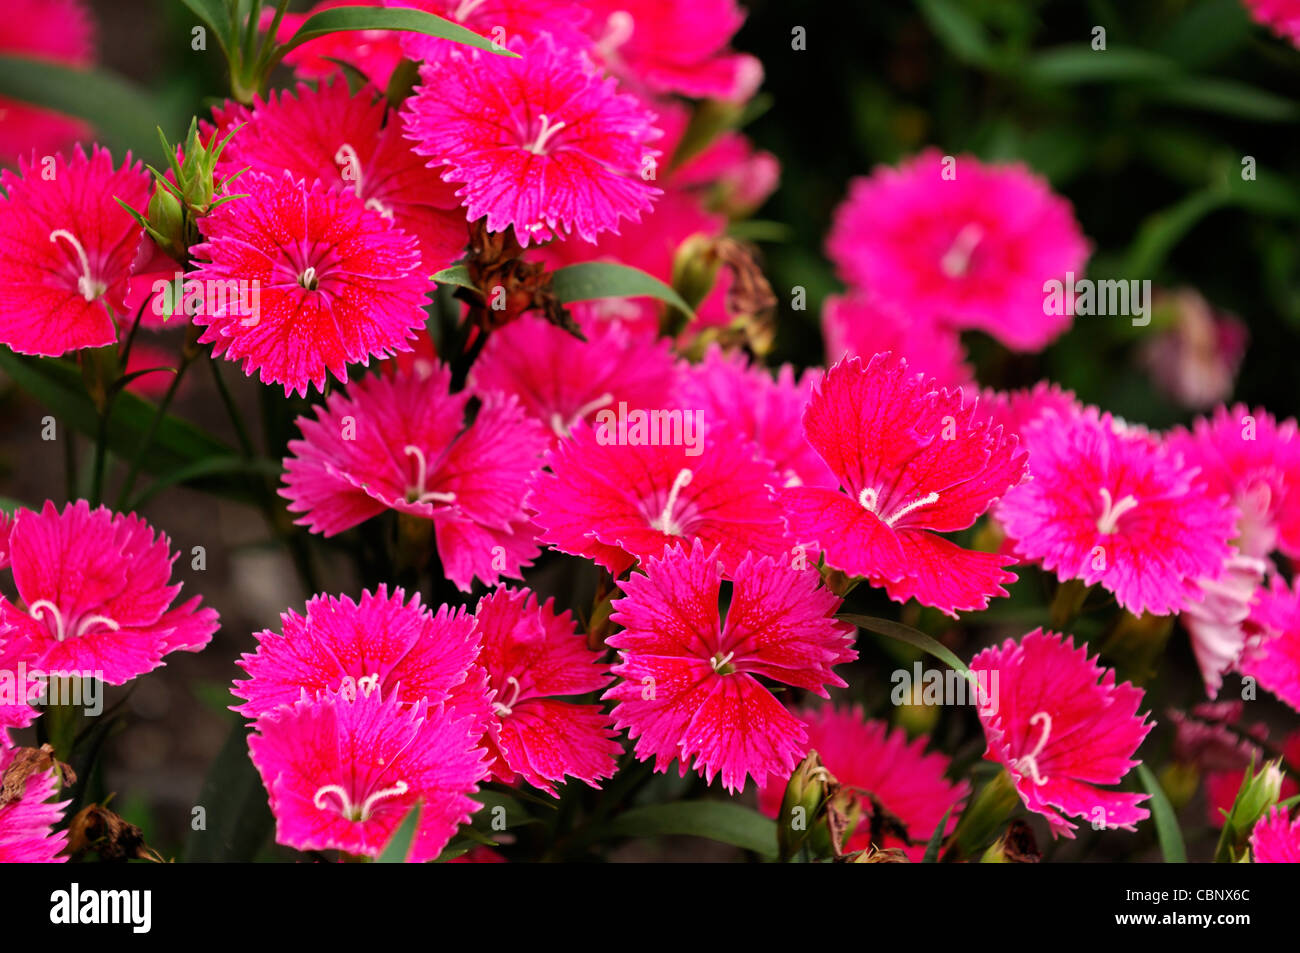 Dianthus ideale Selezionare Lampone Chinensis x Barbatus hardy annuale di rosa fiori di garofano blumi blossoms Foto Stock